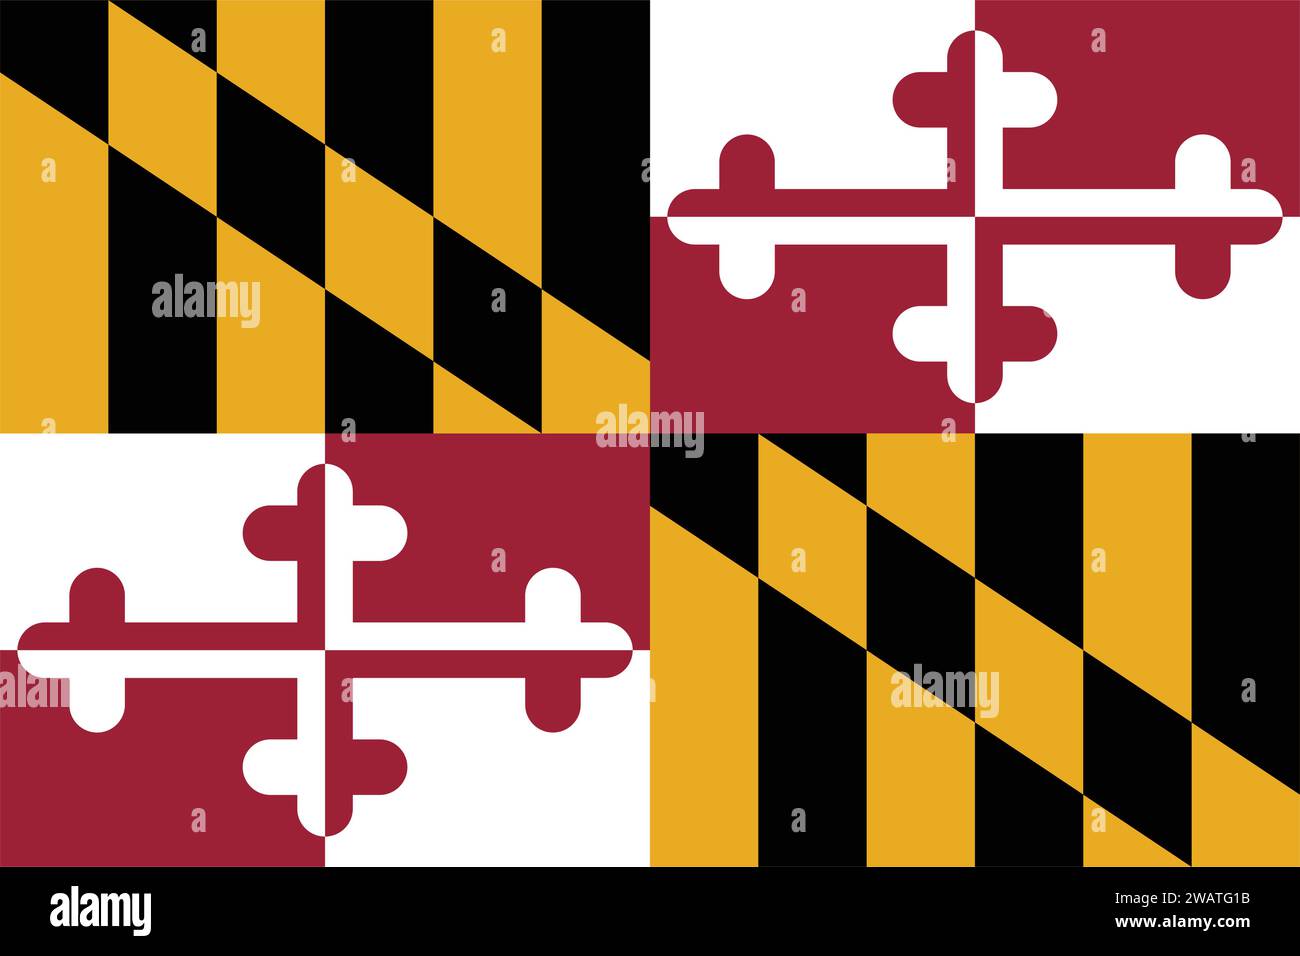 Alta bandiera dettagliata del Maryland. Bandiera dello stato del Maryland, bandiera nazionale del Maryland. Bandiera dello stato del Maryland. USA. America. Illustrazione Vettoriale